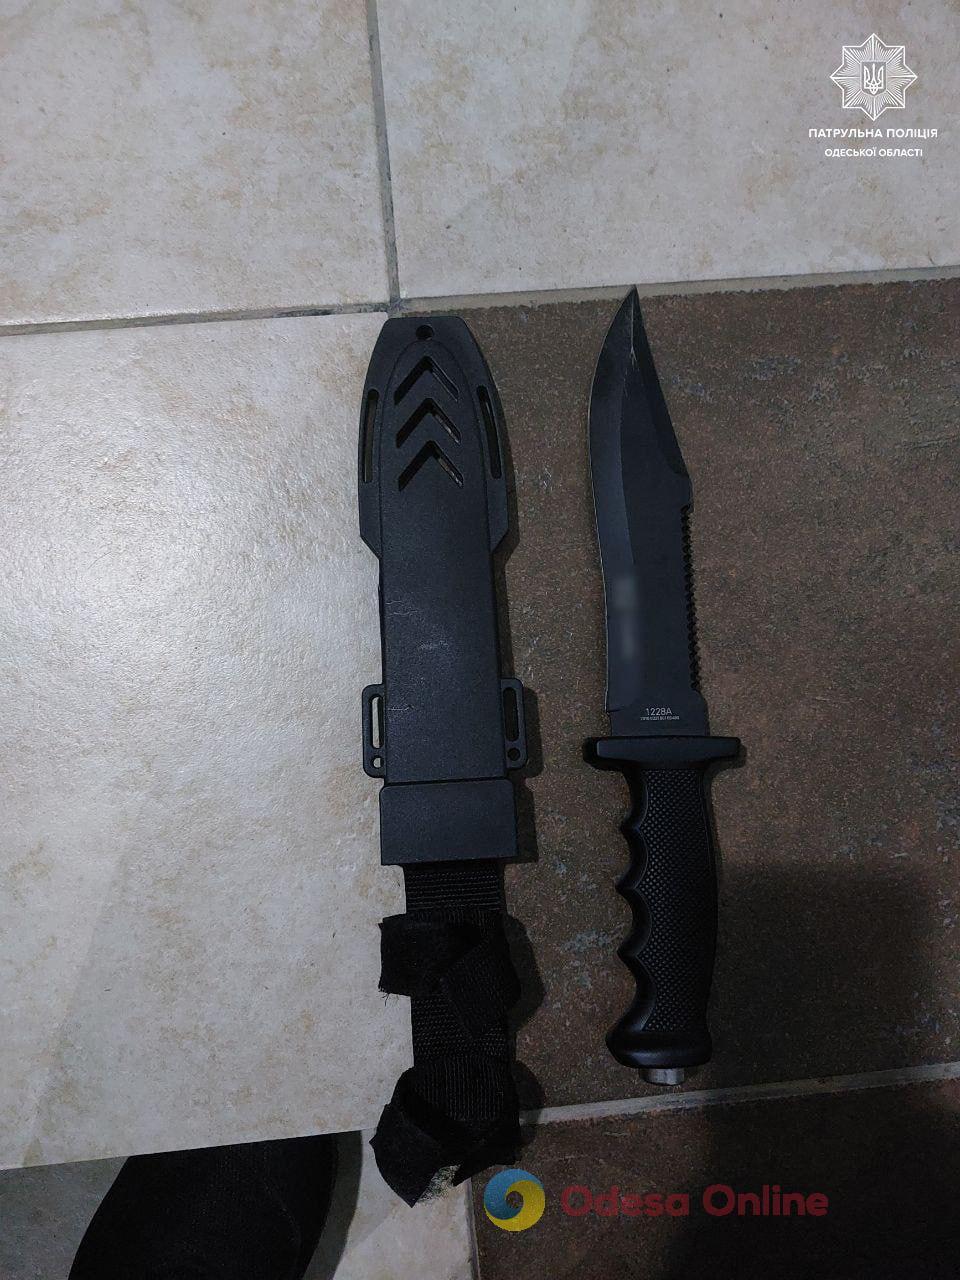 В Ізмаїлі агресивний чоловік погрожував перехожим ножем